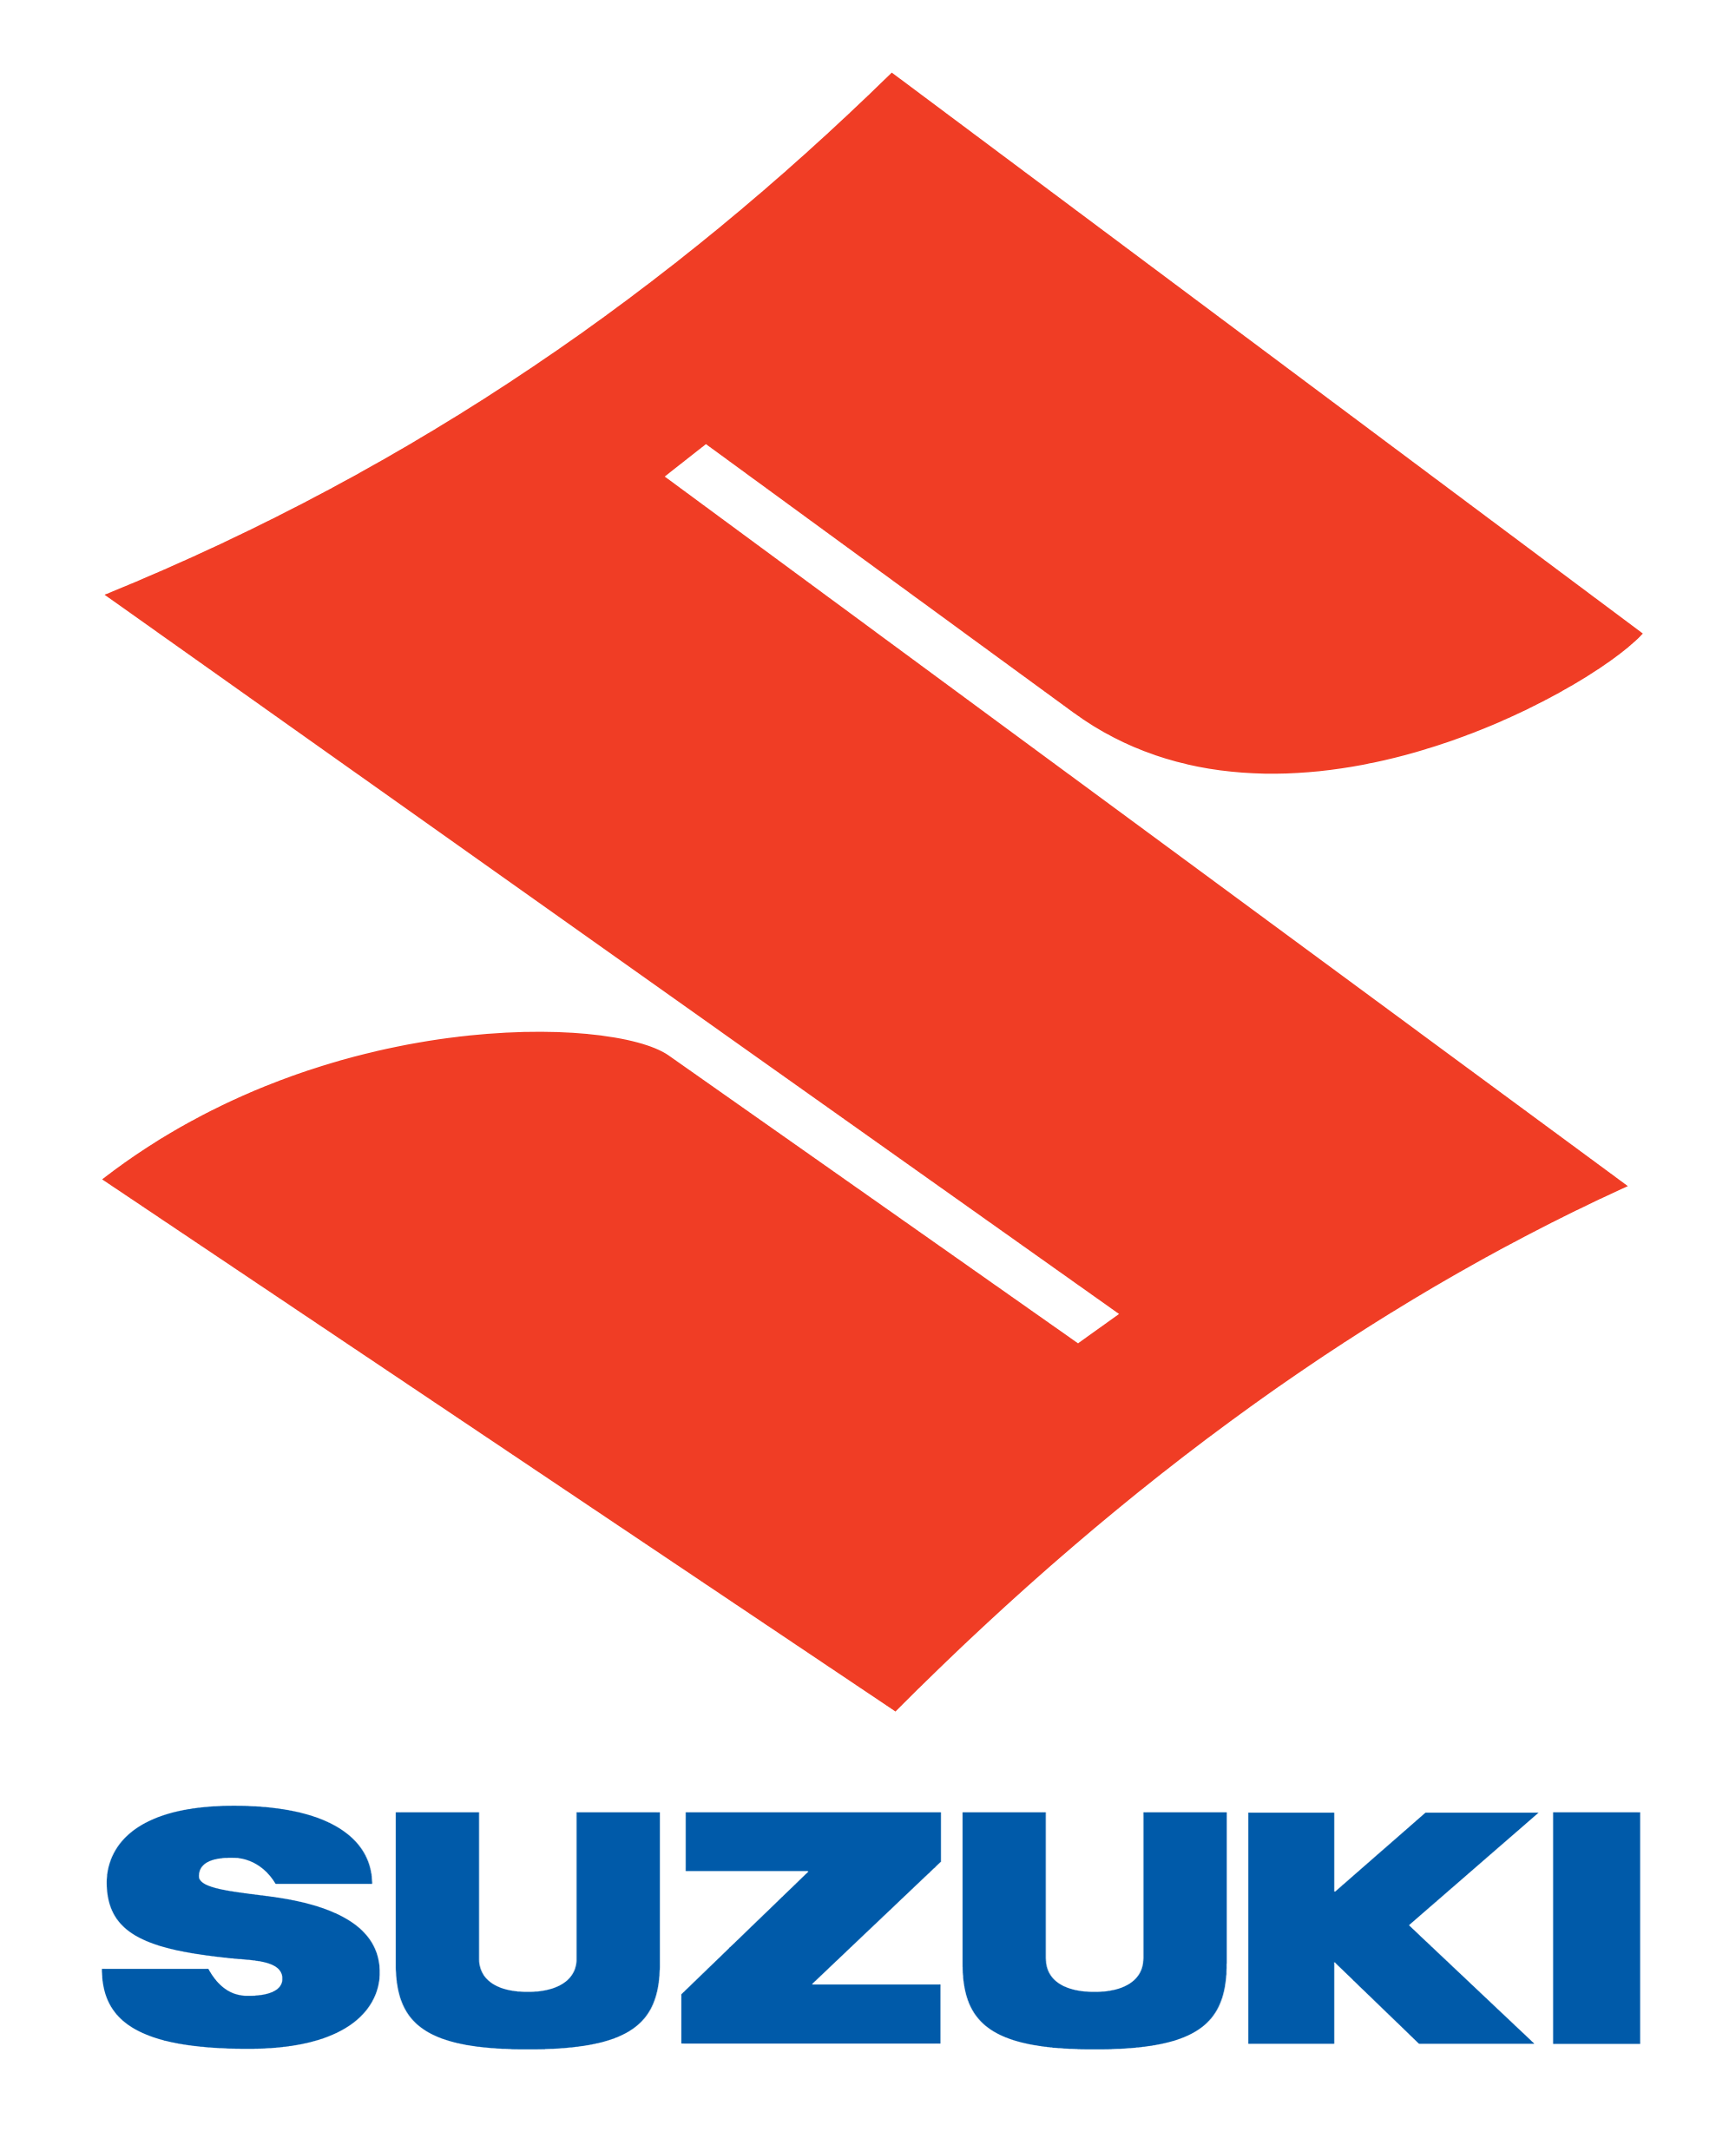 Suzuki Motorcycles